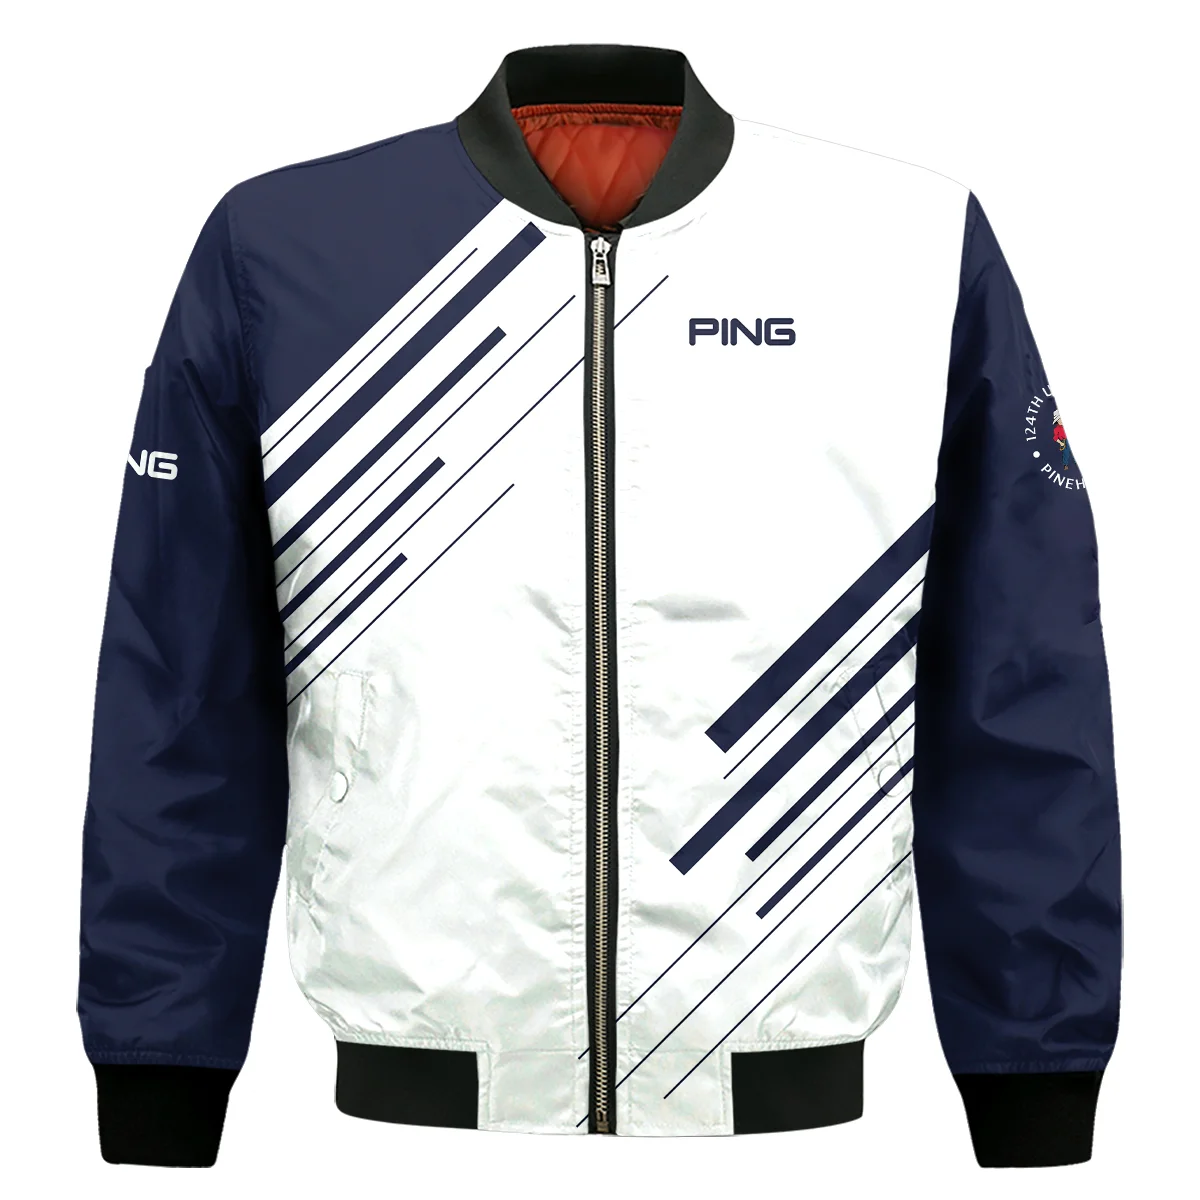 Ping 124th U.S. Open Pinehurst Golf Bomber Jacket Striped Pattern Dark Blue White All Over Print Bomber Jacket